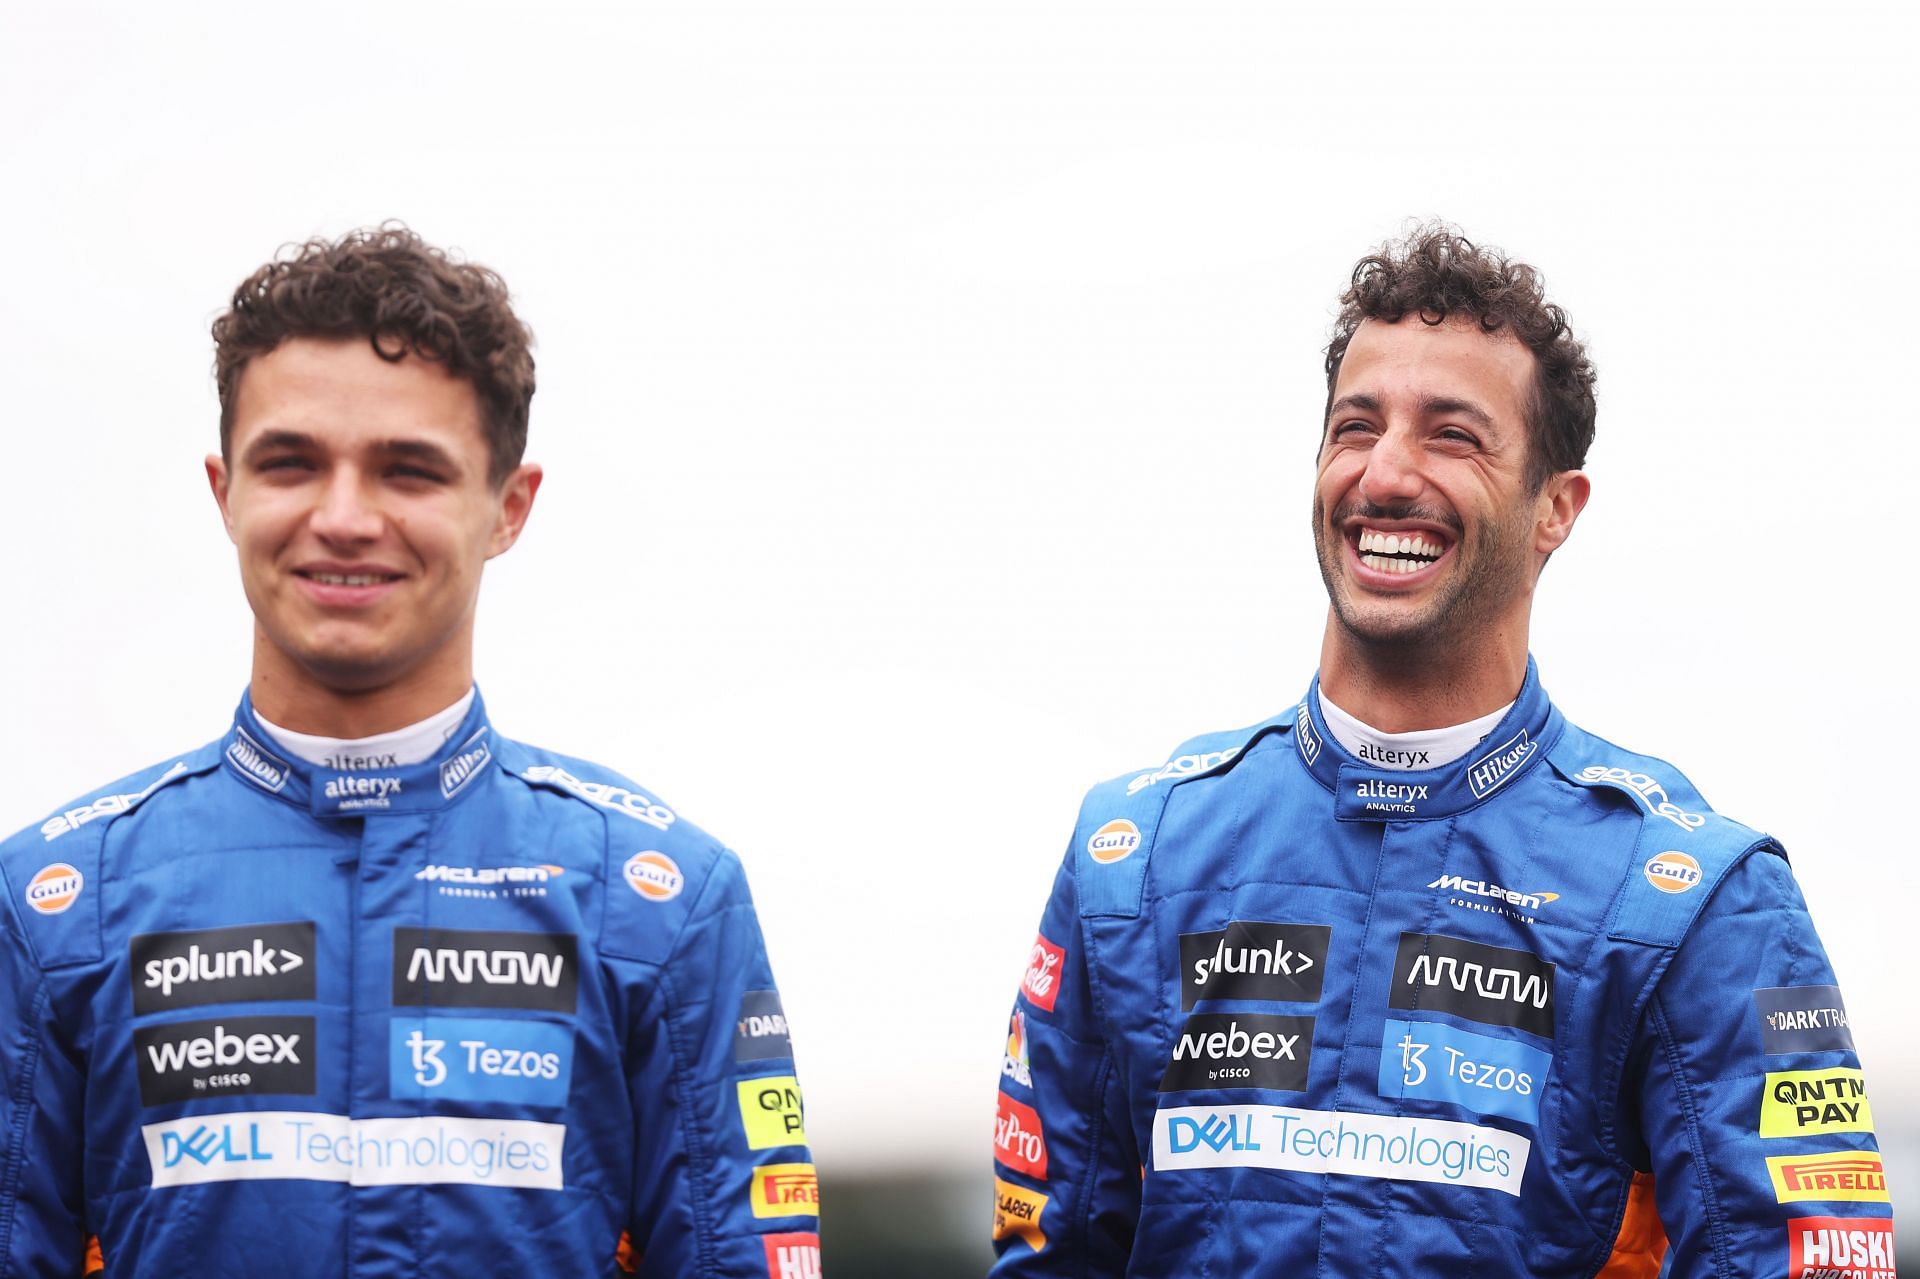 McLaren team-mates for 2021, Lando Norris and Daniel Ricciardo